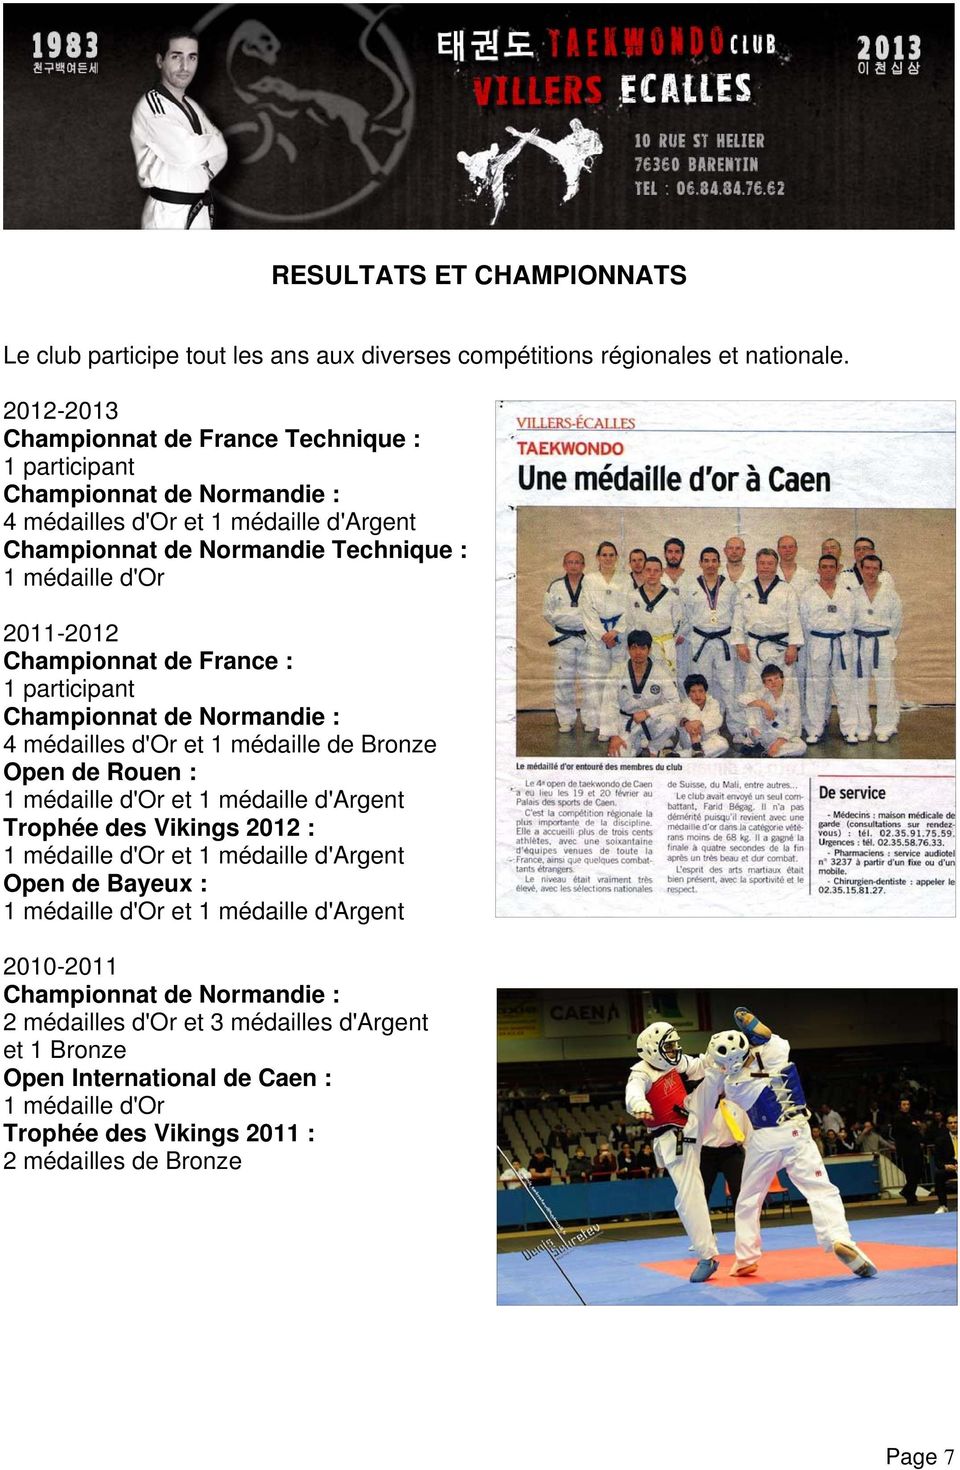 Championnat de France : 1 participant Championnat de Normandie : 4 médailles d'or et 1 médaille de Bronze Open de Rouen : 1 médaille d'or et 1 médaille d'argent Trophée des Vikings 2012 : 1